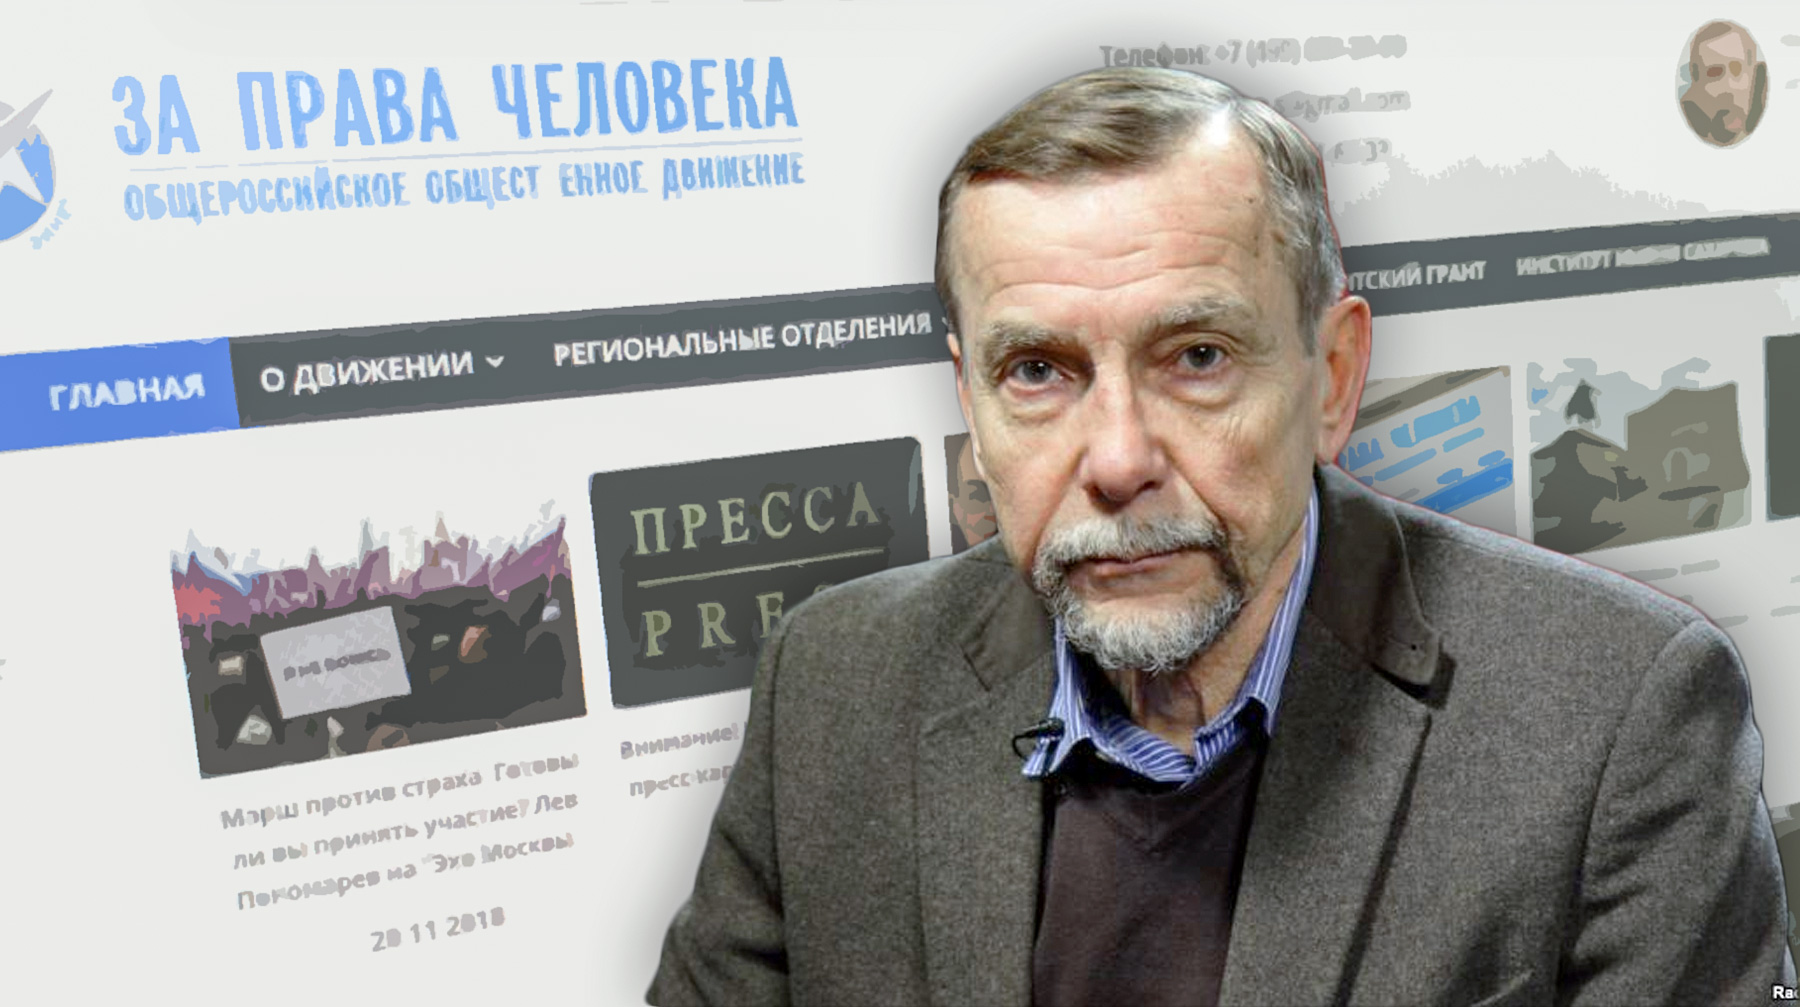 Лев Пономарев отбывает арест за репост сообщения о несогласованной акции в поддержку фигурантов дел «Сети» и «Нового величия» Коллаж: © Daily Storm